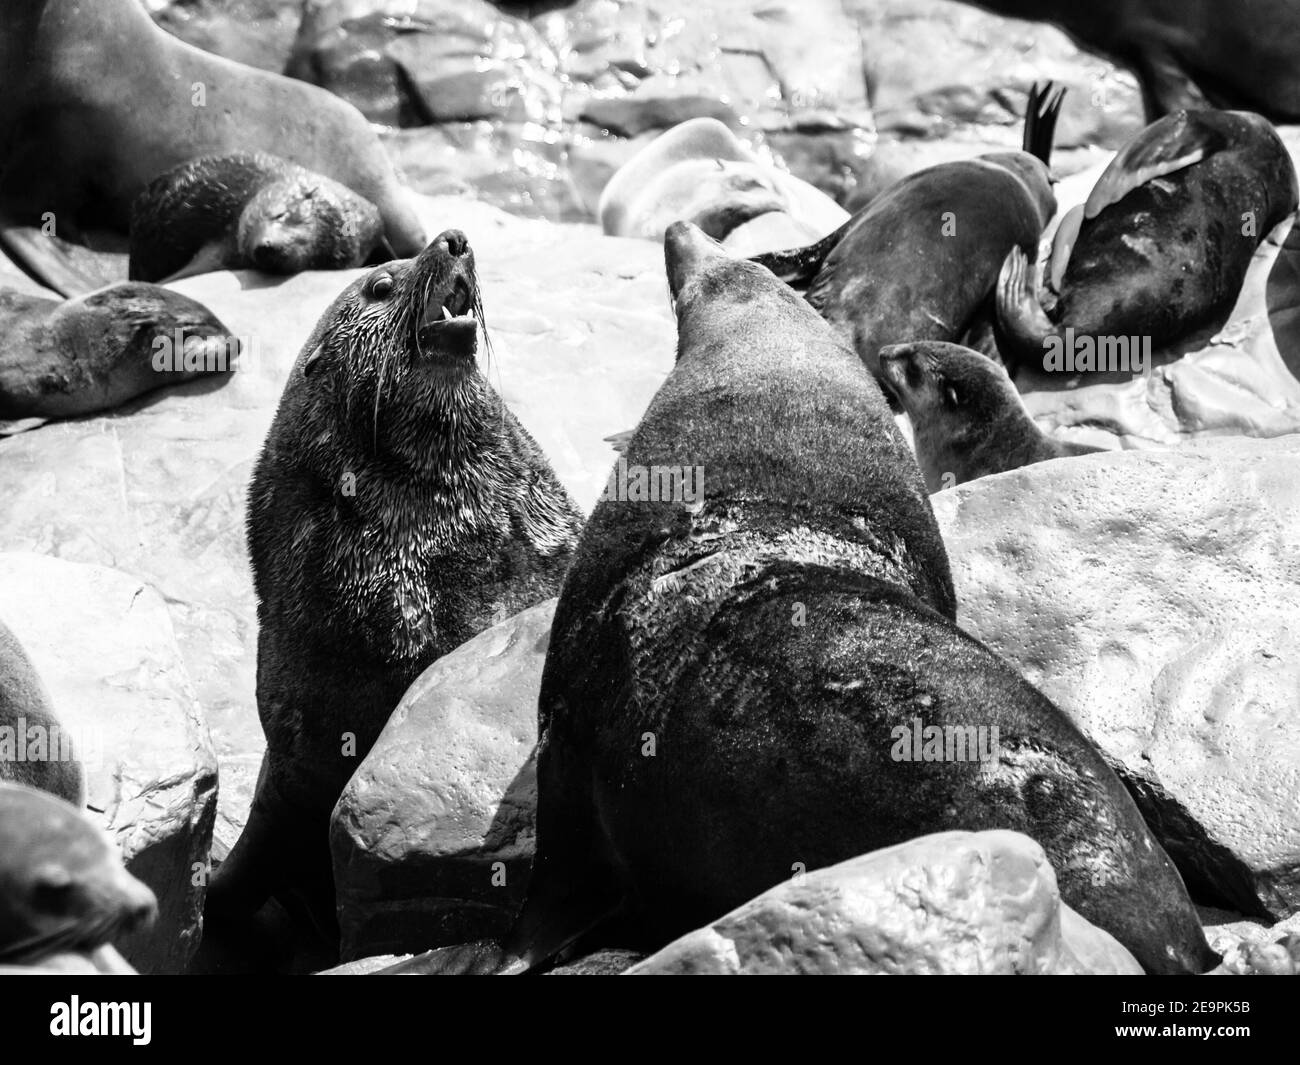 Due pericolosi foche di pelliccia marrone che combattono su una roccia. Immagine in bianco e nero. Foto Stock